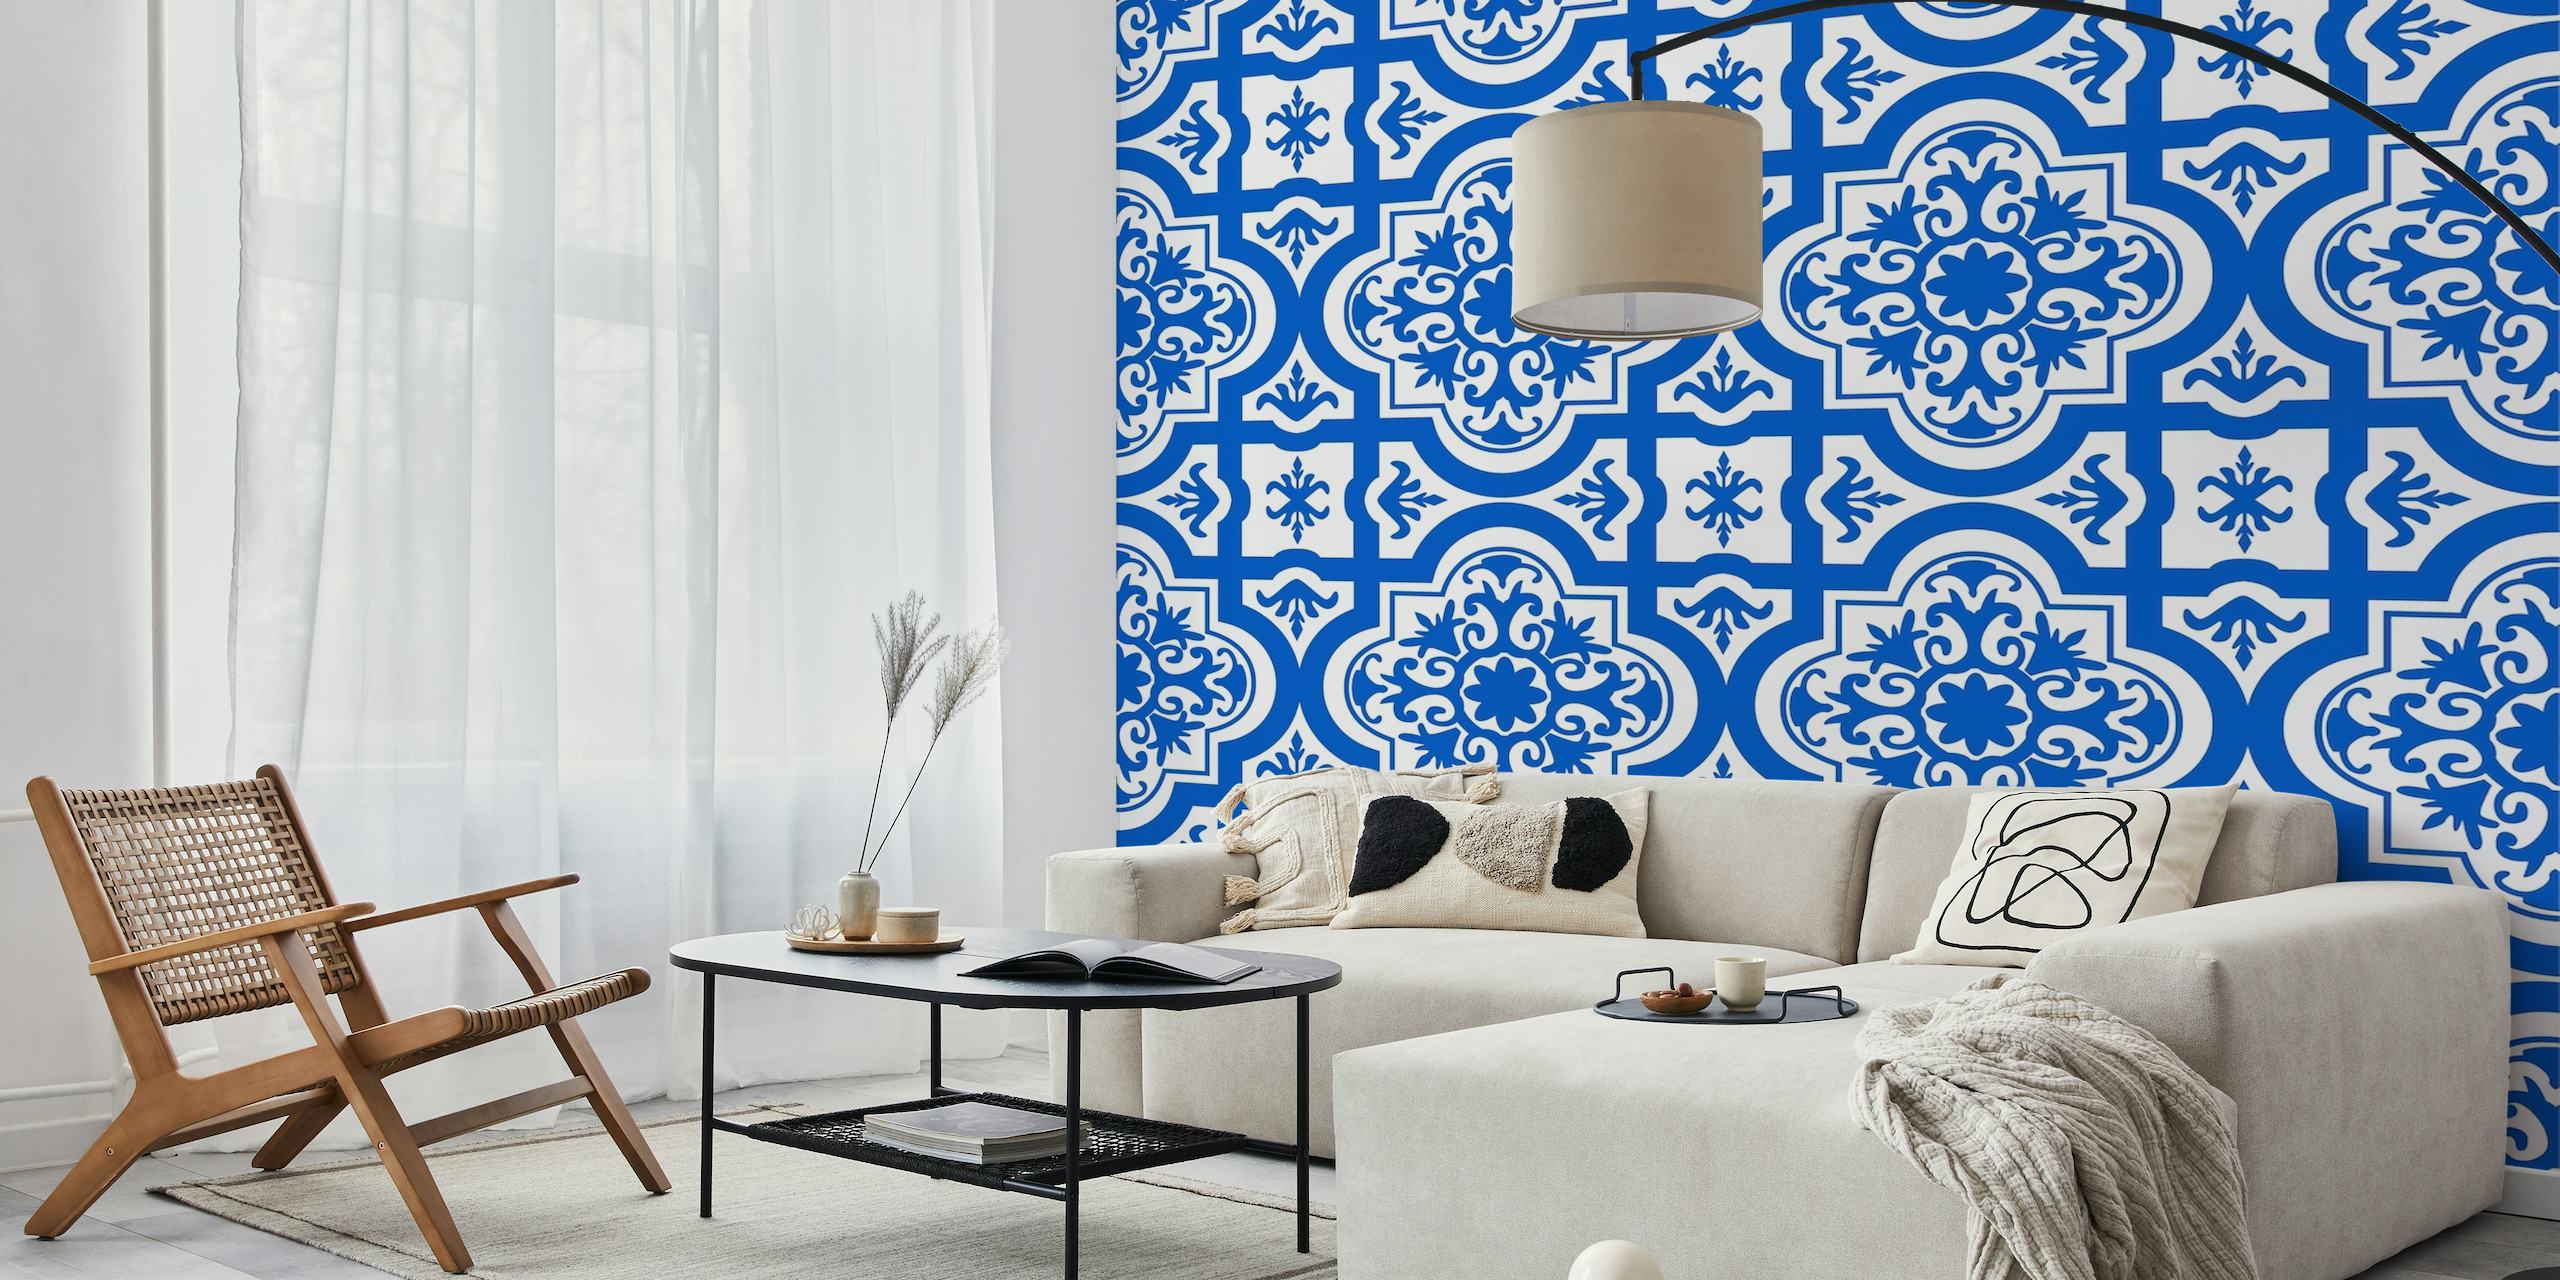 Spanish tile pattern azure blue white tapete